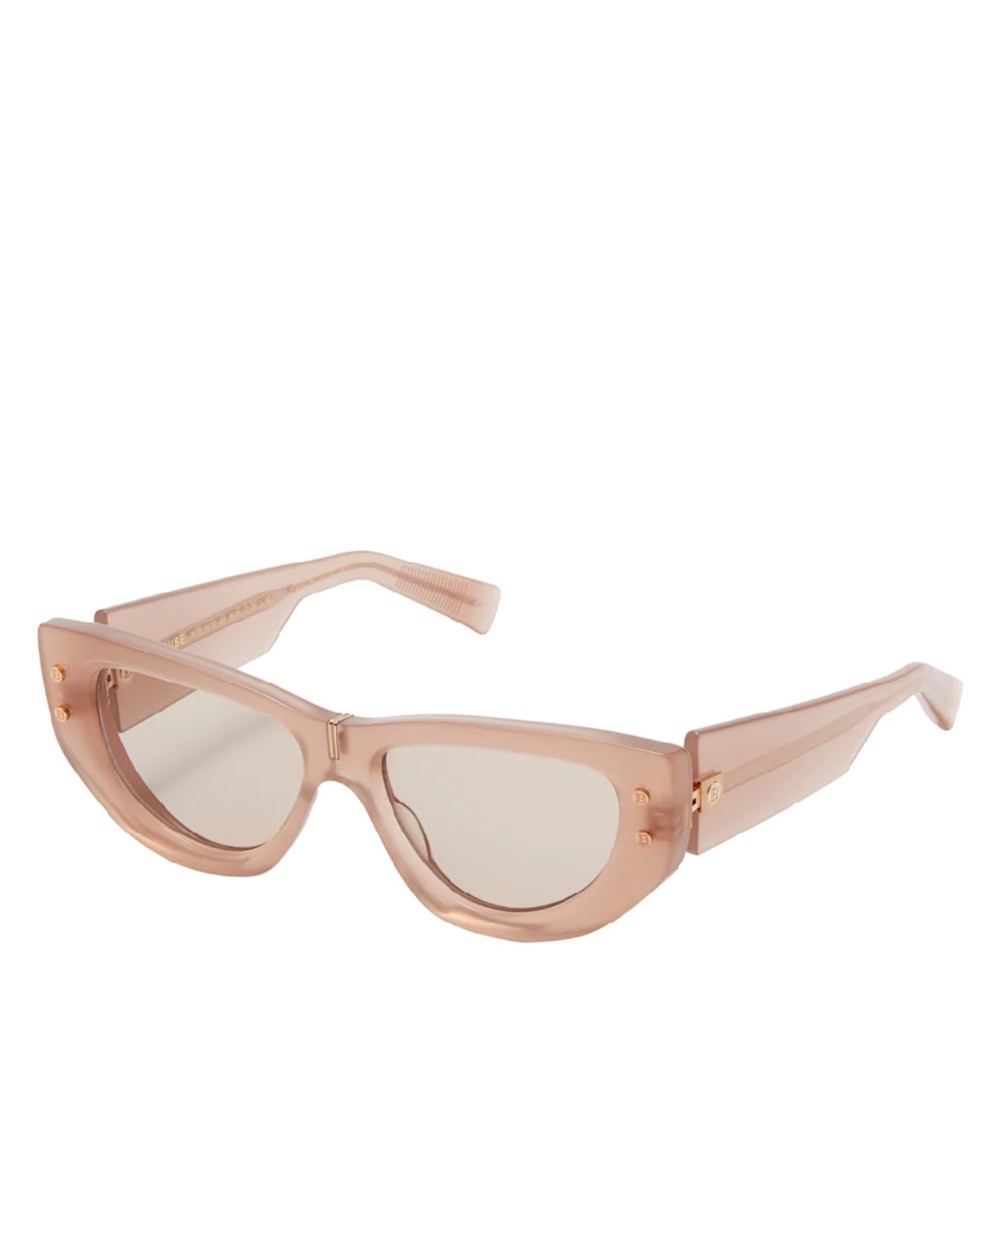 Солнцезащитные очки B-Muse Balmain BPS-151C-55, бежевый цвет • Купить в интернет-магазине Kameron